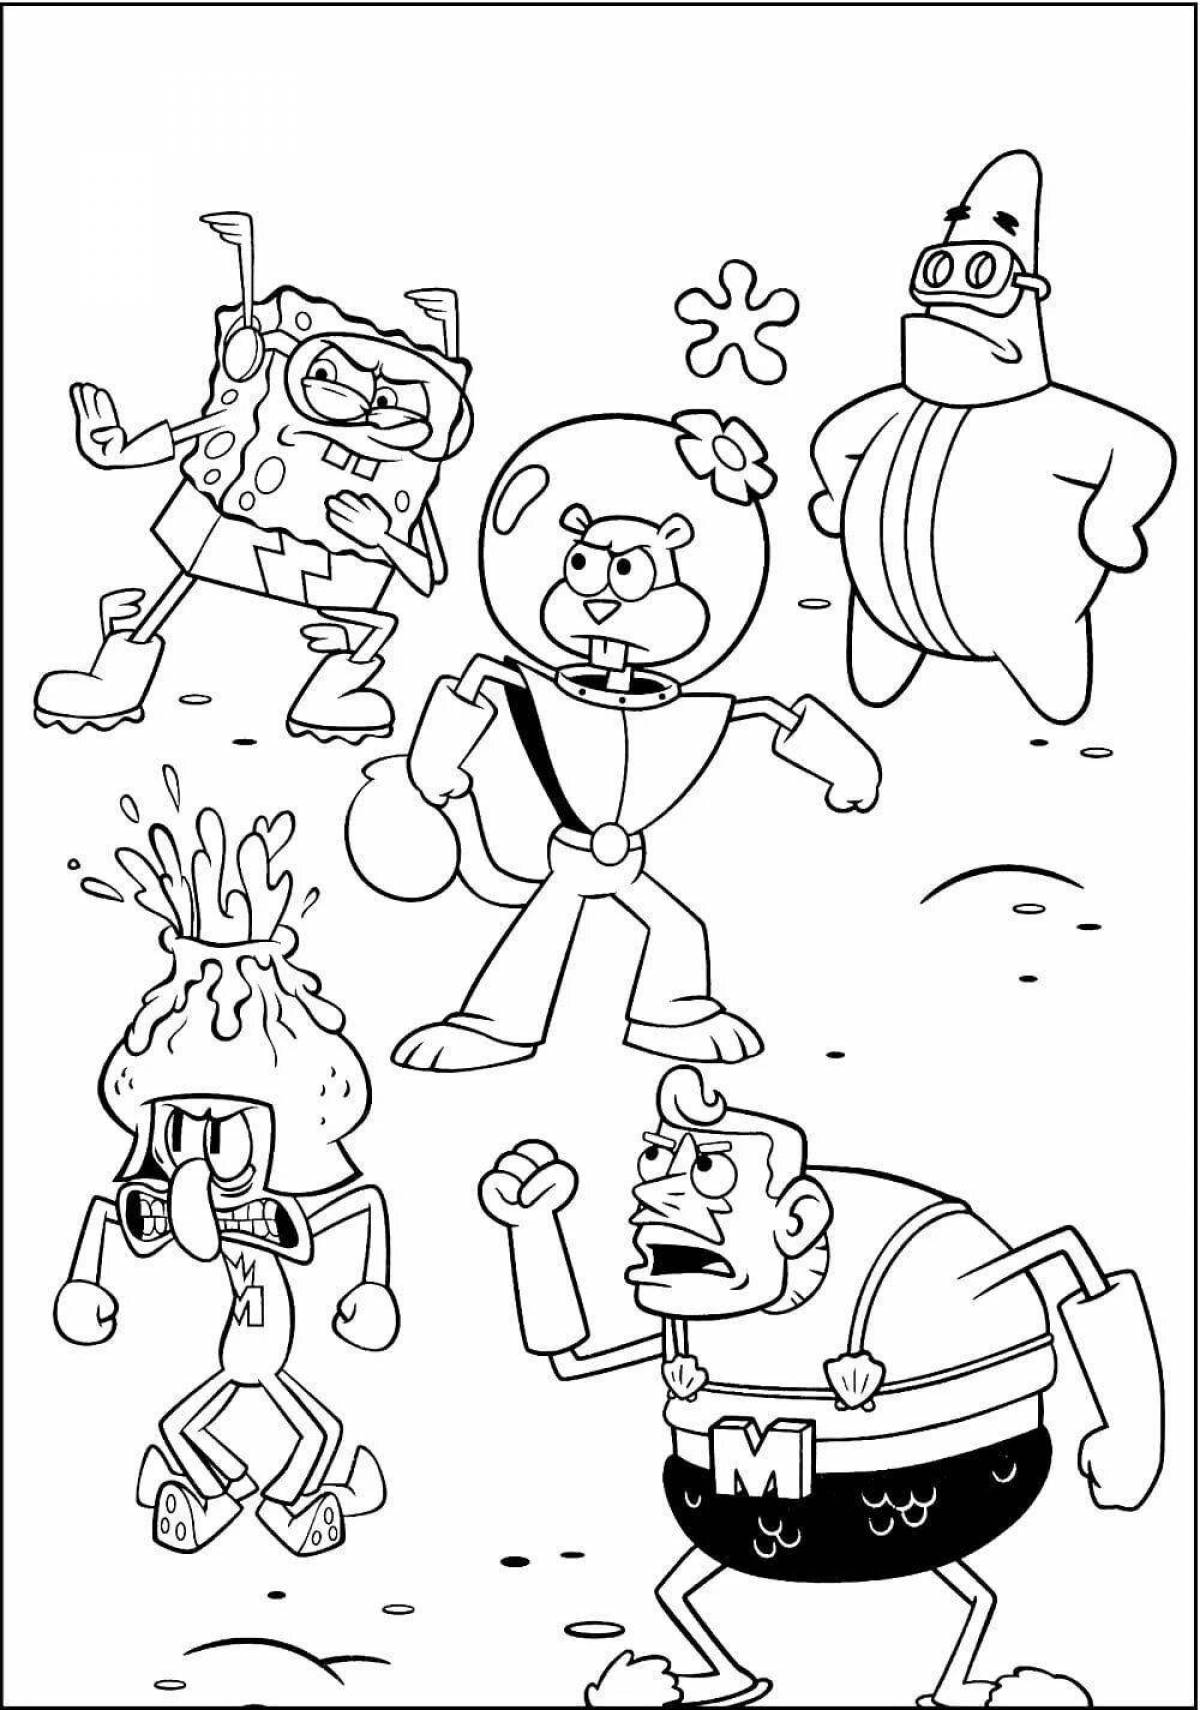 Spongebob wonderful coloring all heroes